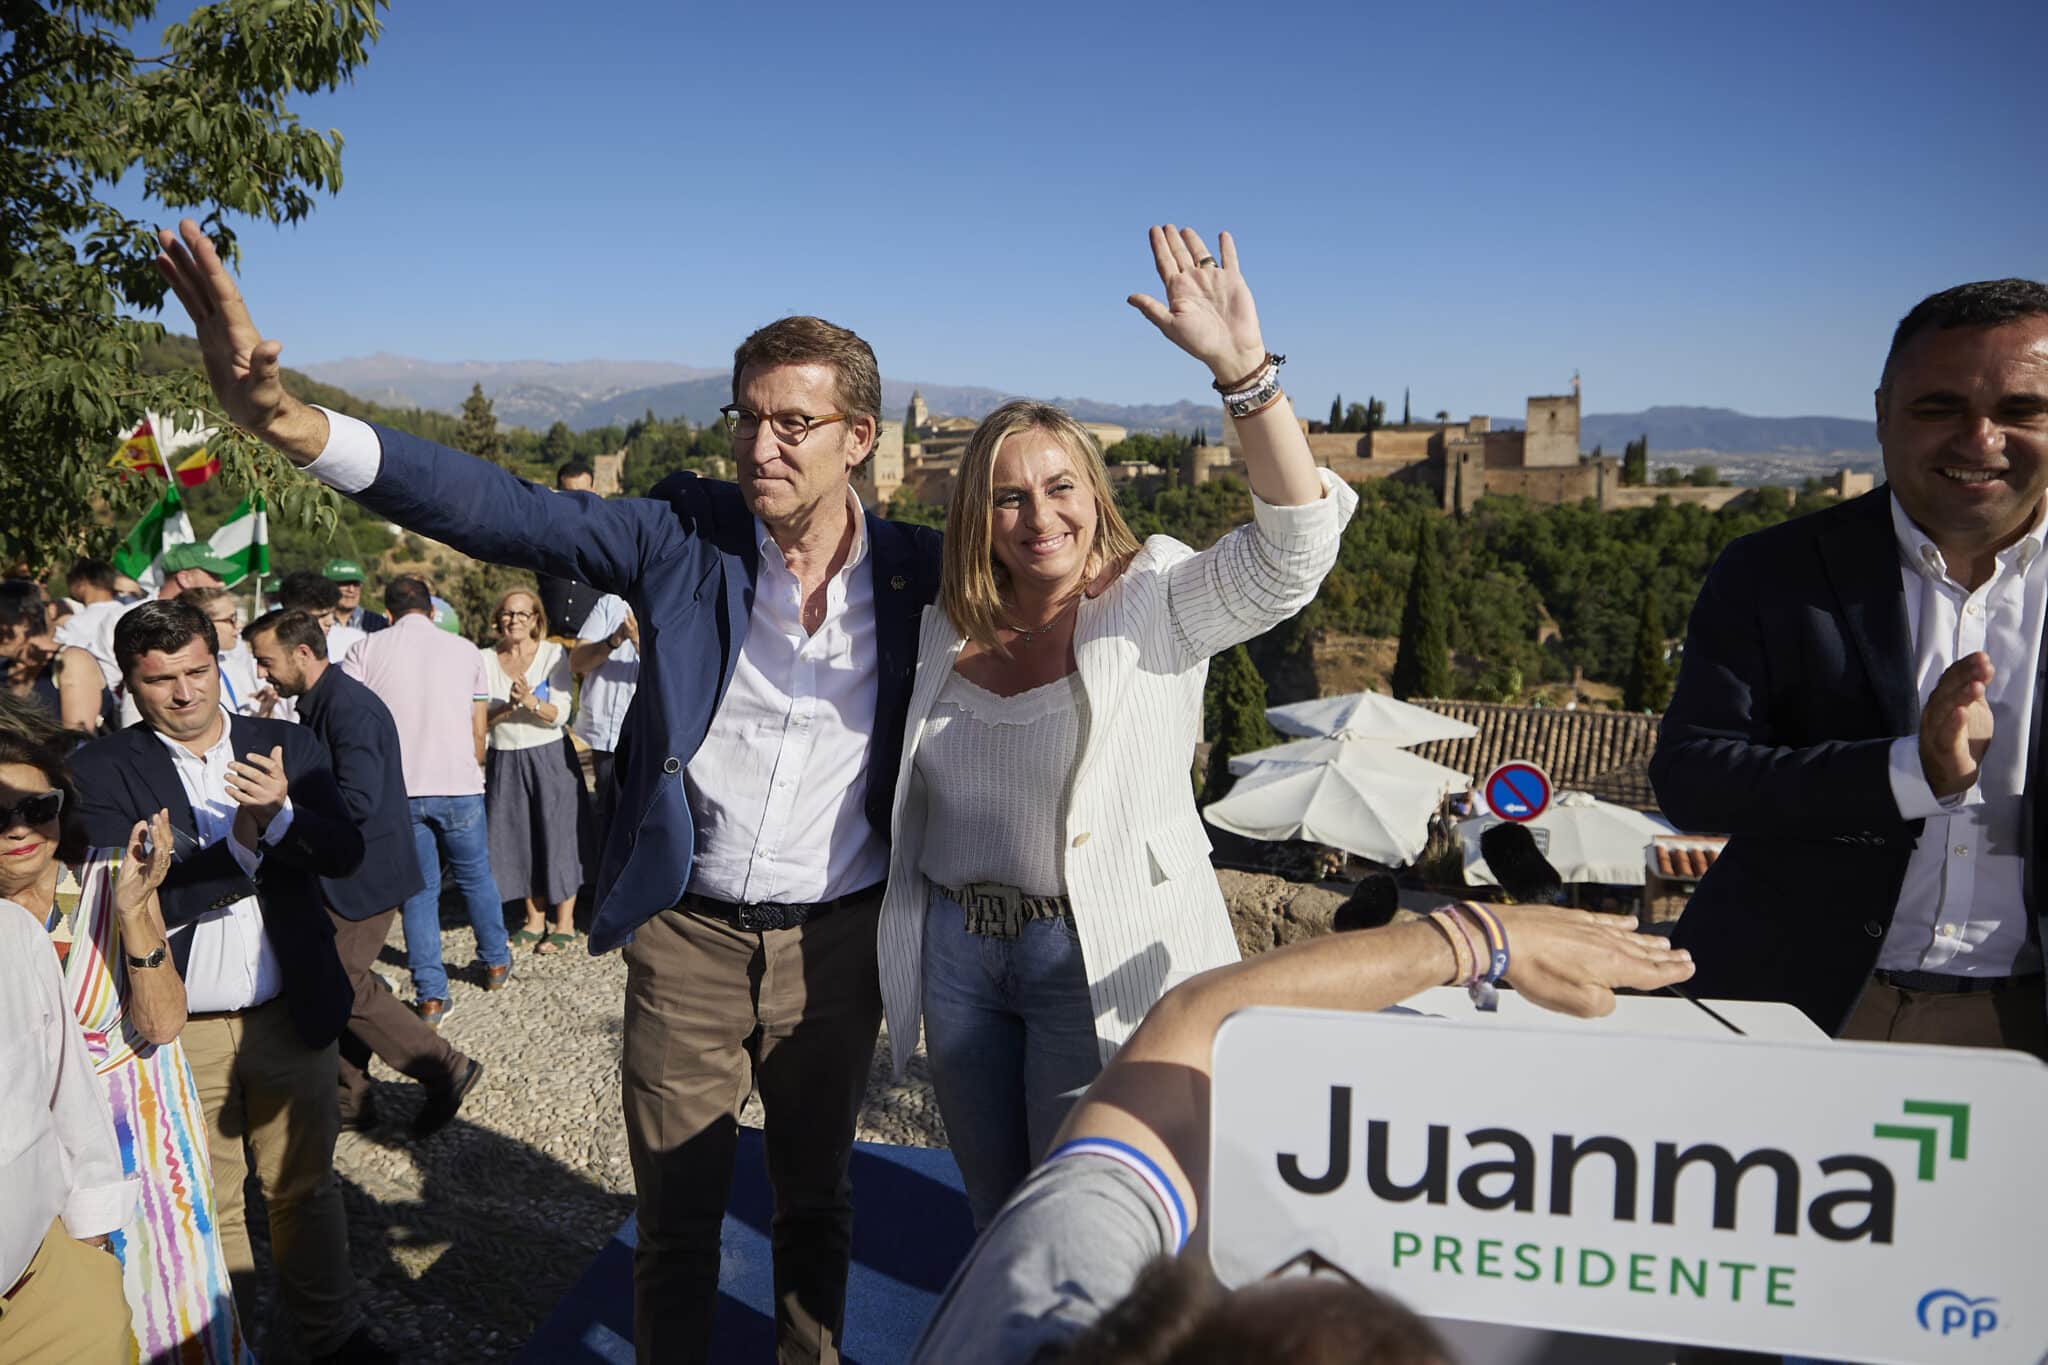 Feijóo recuerda a los votantes del PSOE que "se puede ser socialista y votar a Juanma Moreno"